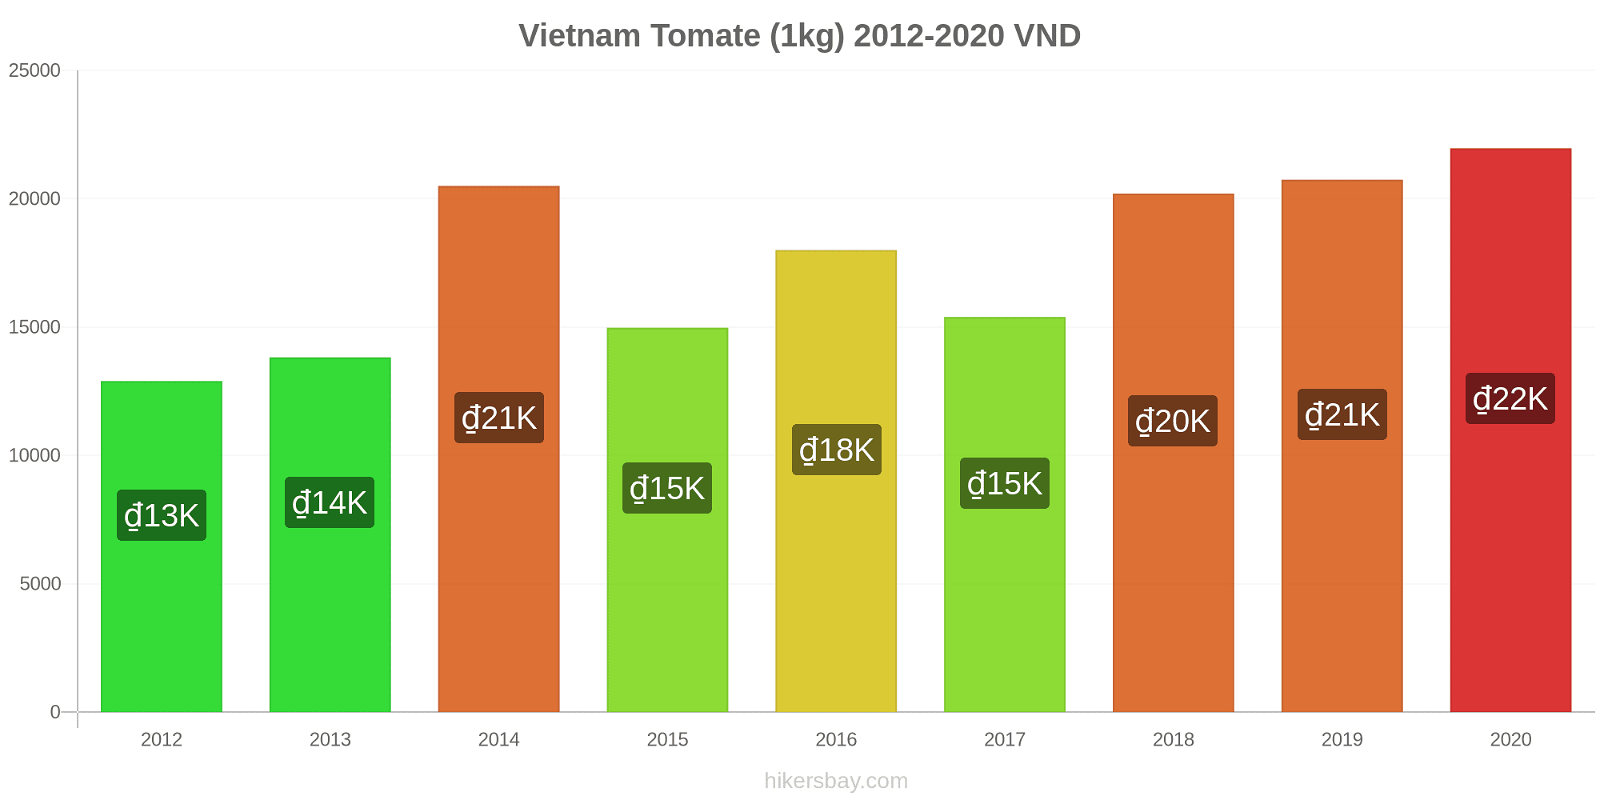 Vietnam cambios de precios Tomate (1kg) hikersbay.com